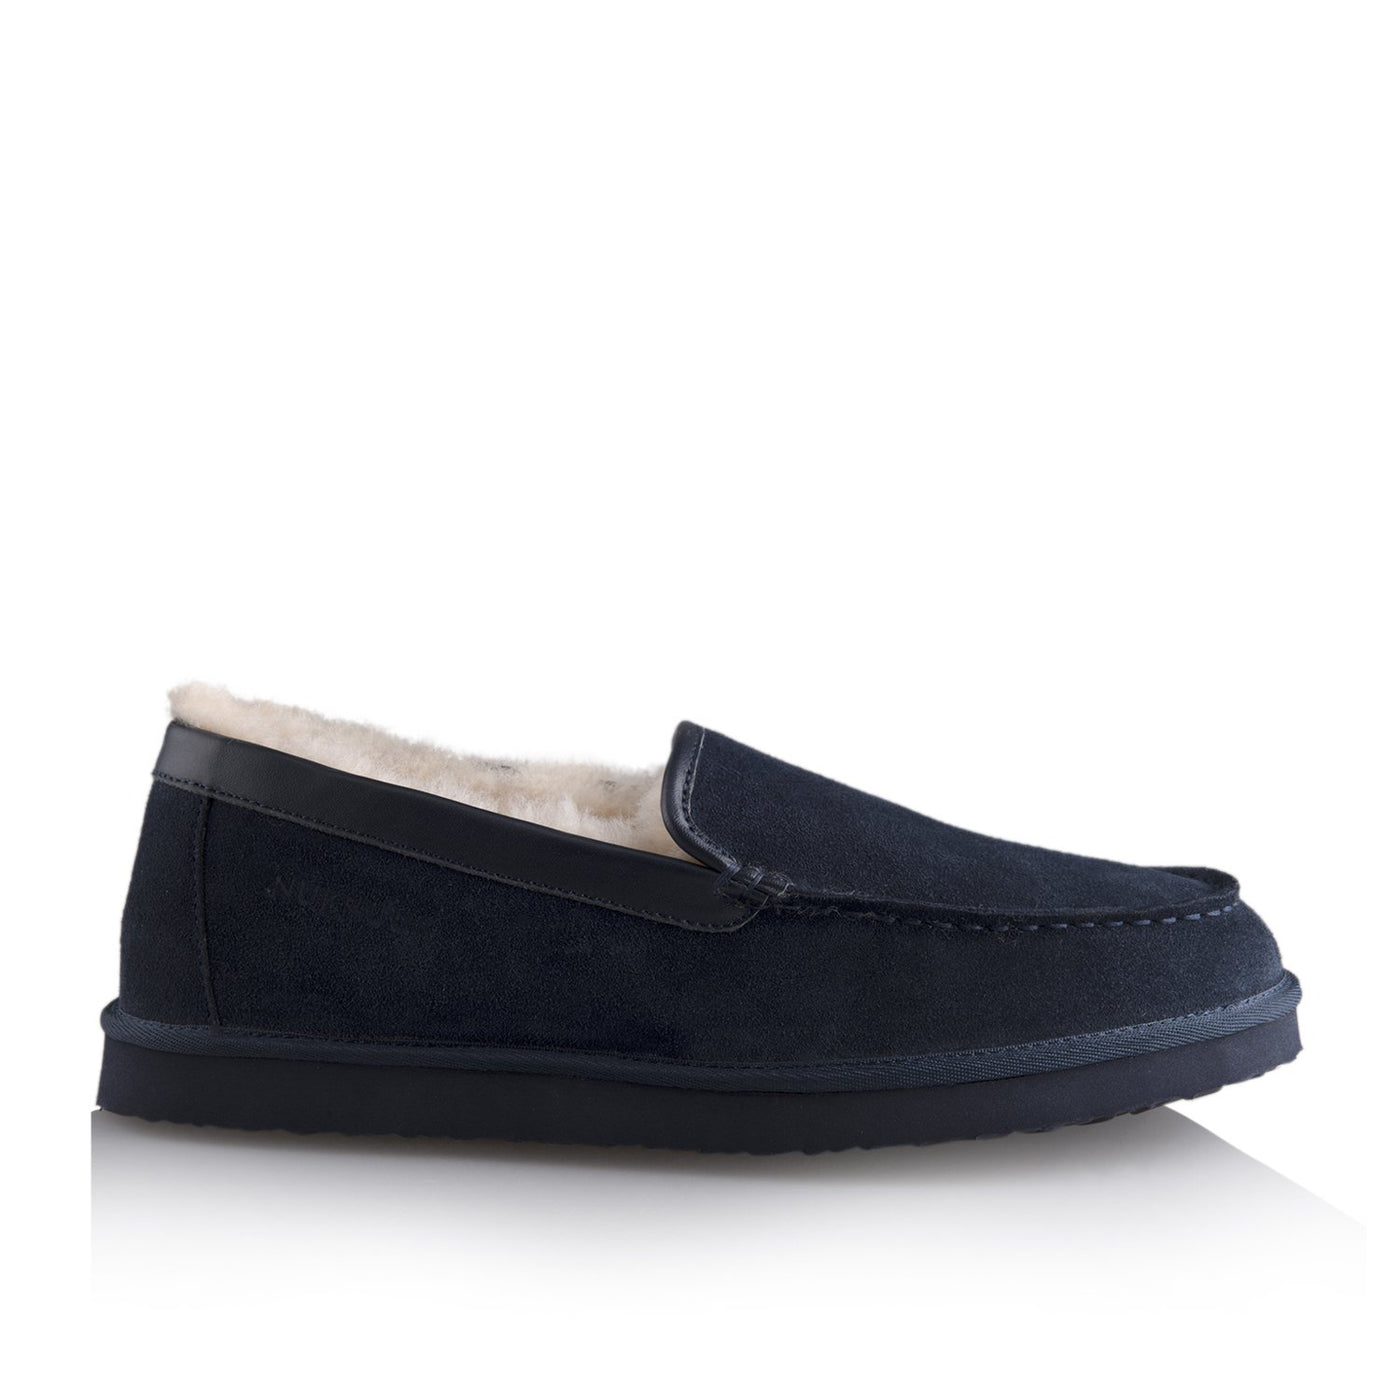 Marco men’s slipper (Navy blue) - Nuknuuk